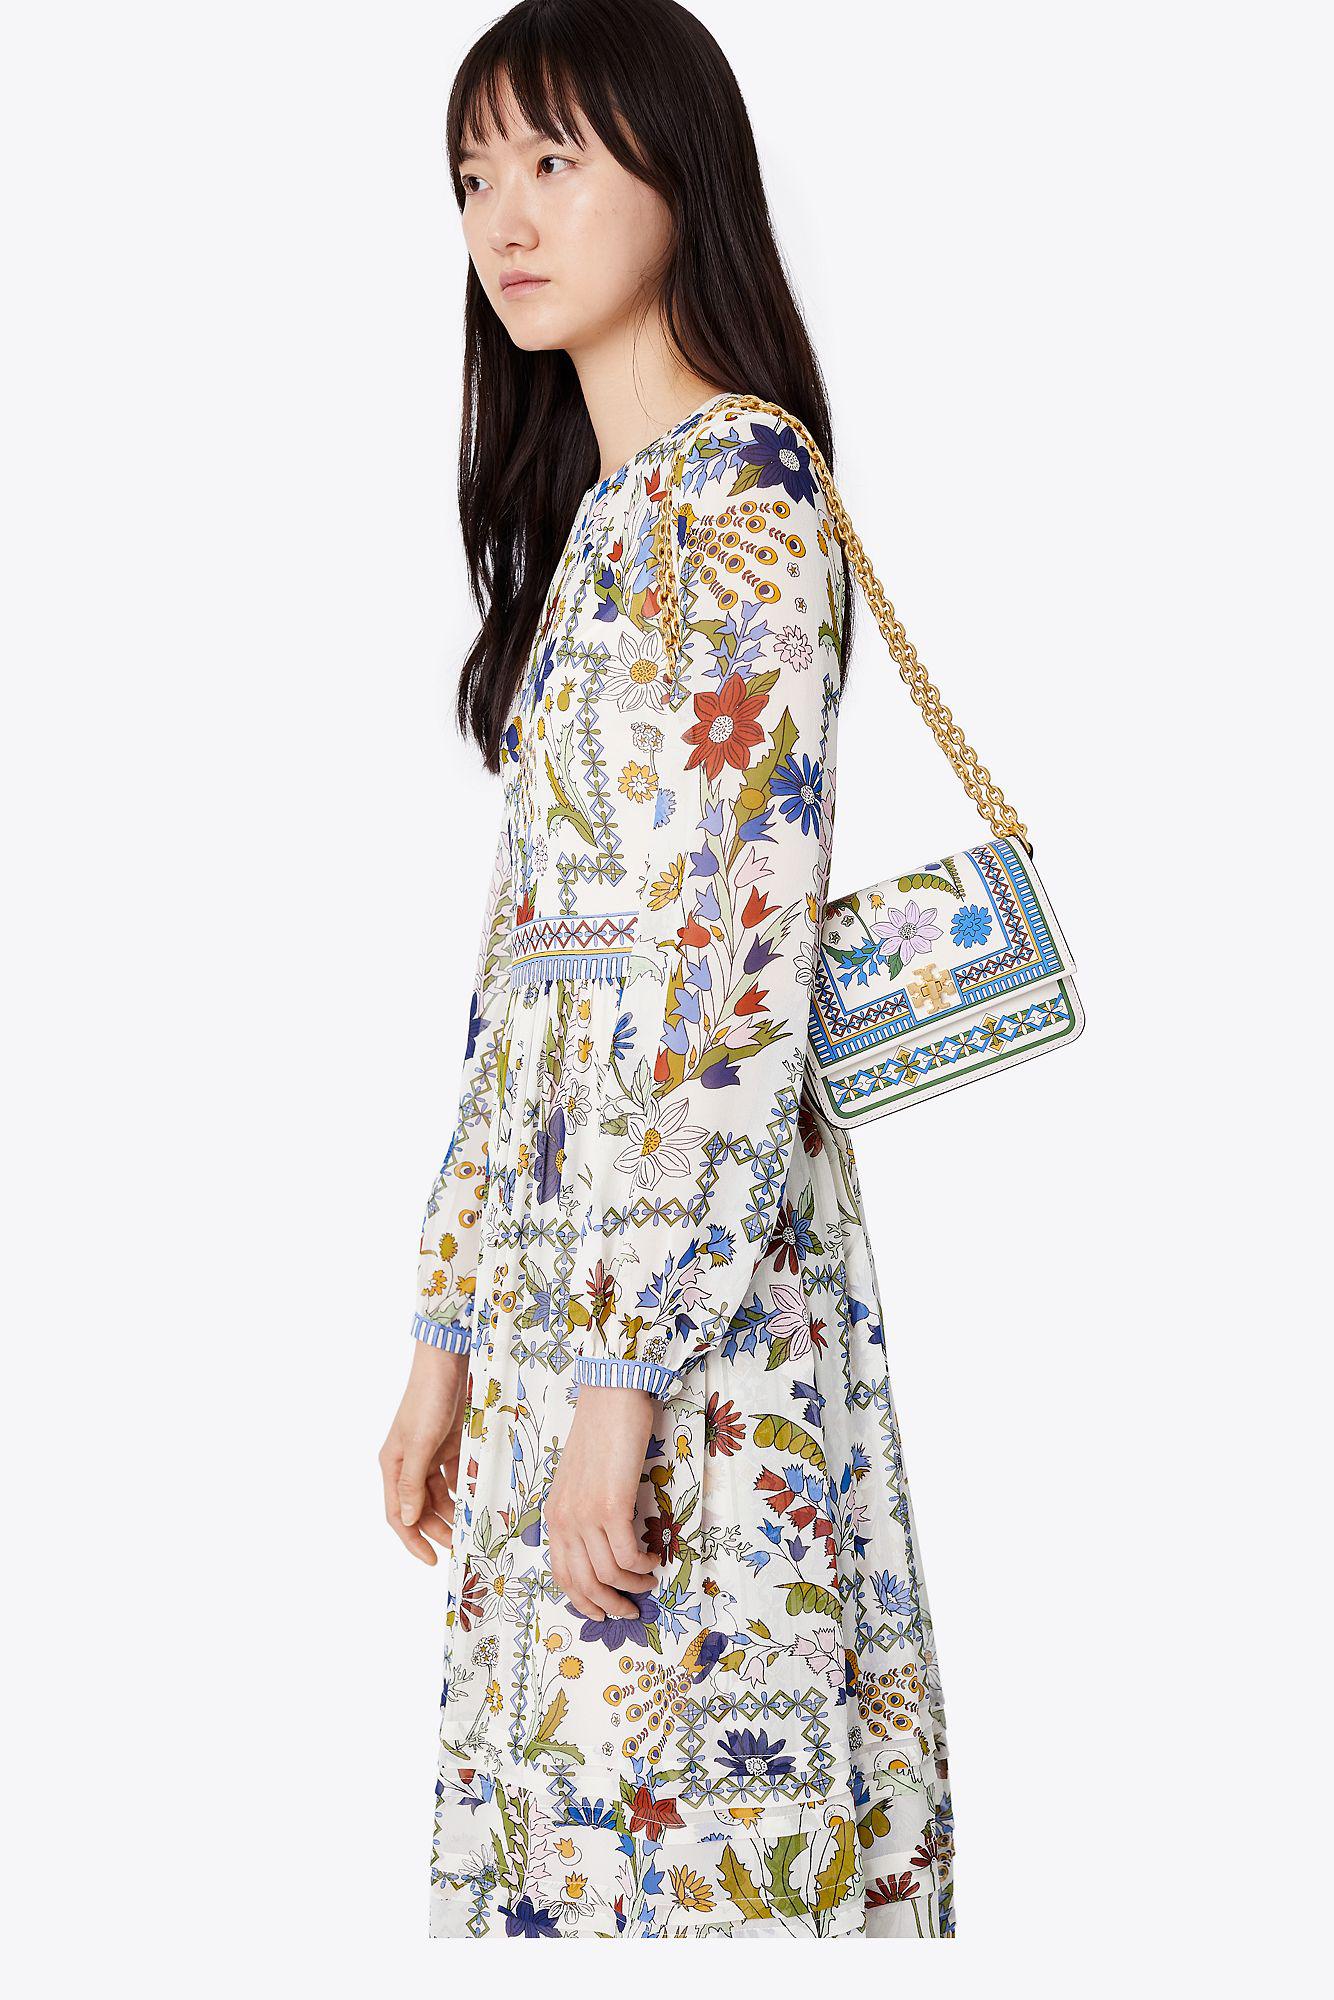 Tory Burch Kira Floral Mini Shoulder Bag